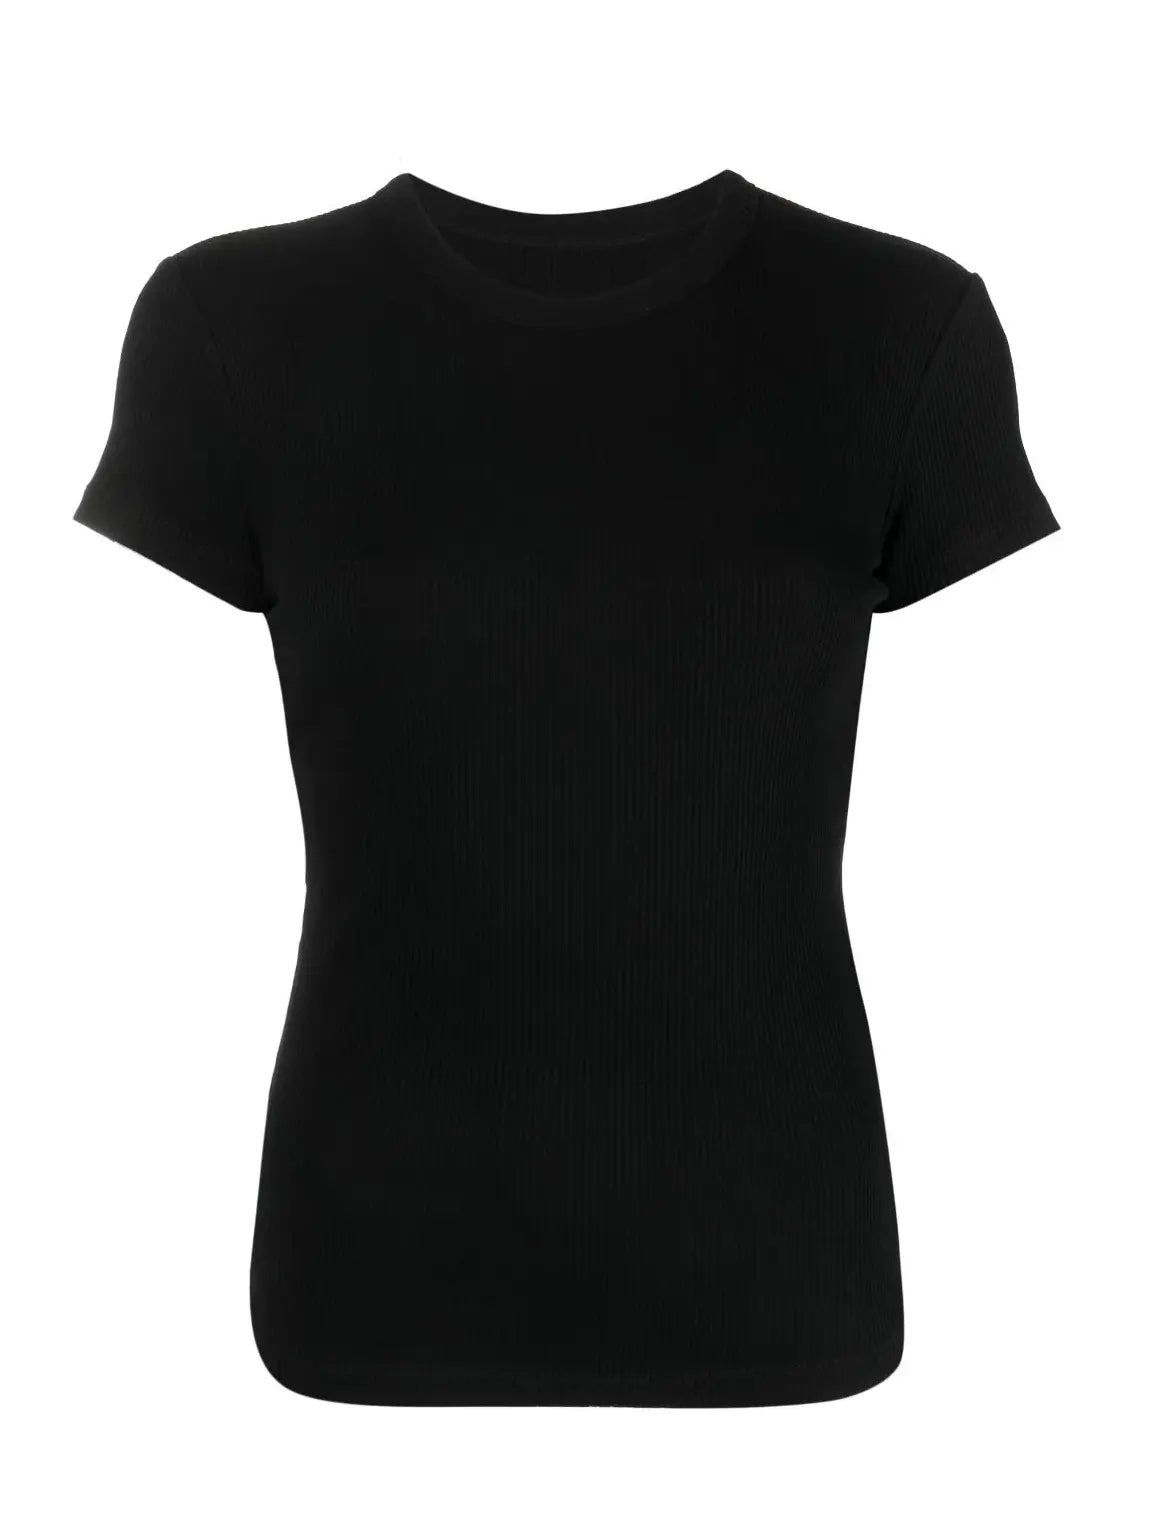 TAOMI t-shirt, black